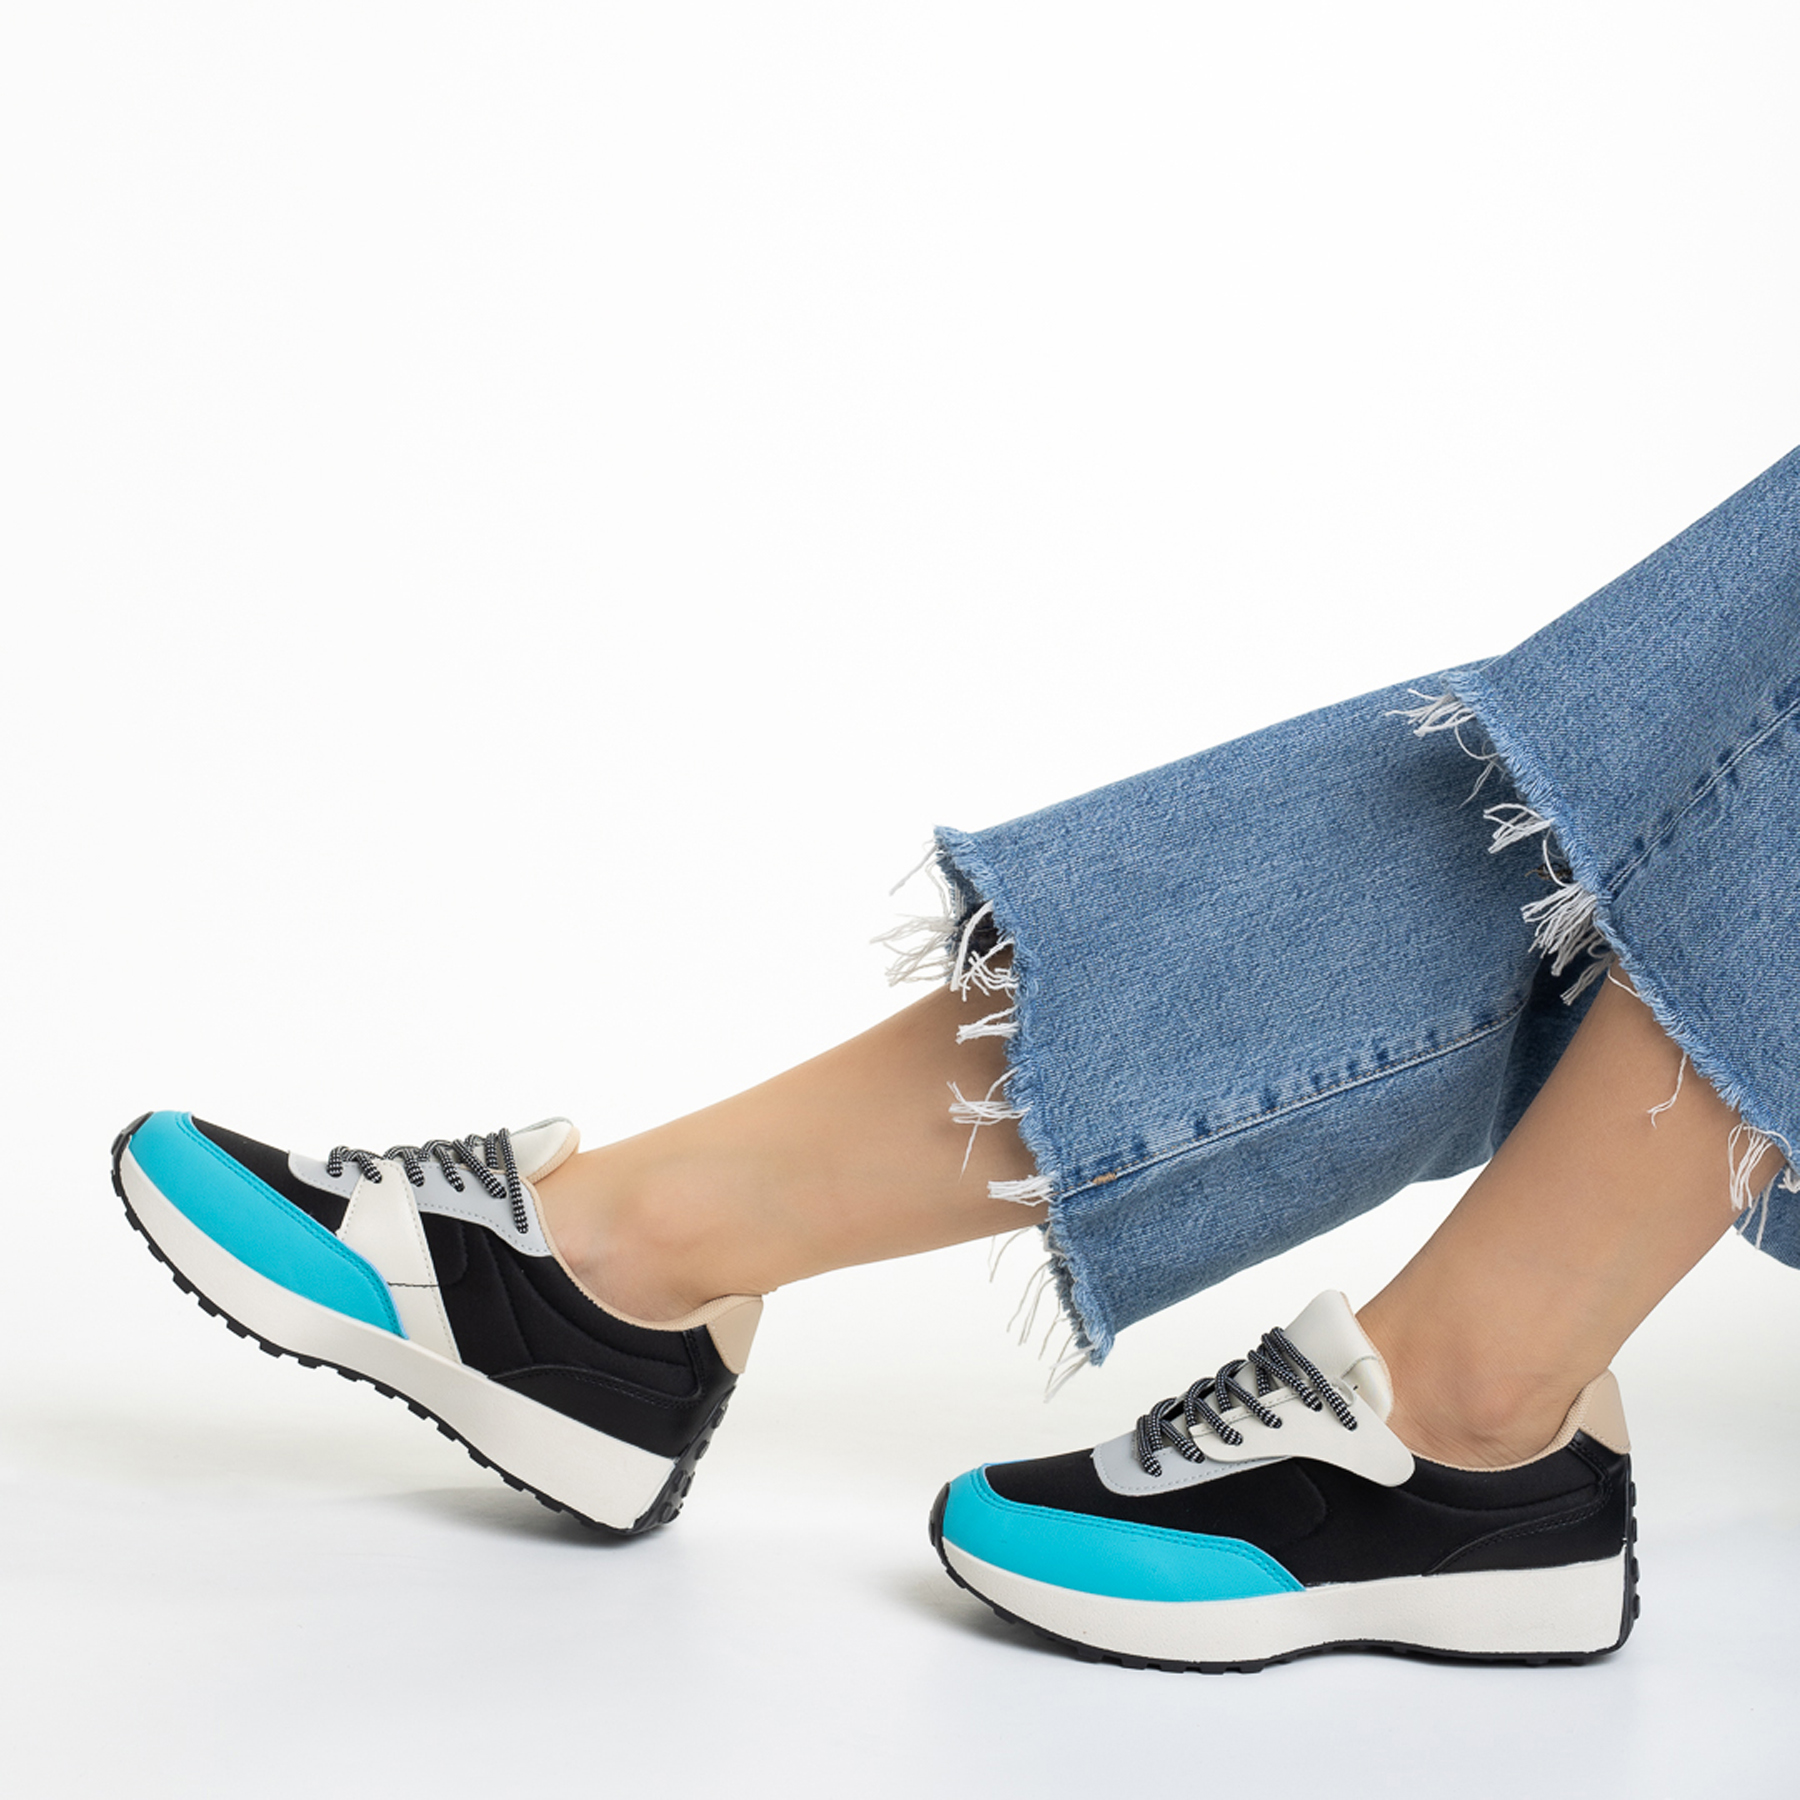 Pantofi sport dama negri cu albastru din piele ecologica si material textil Refugia